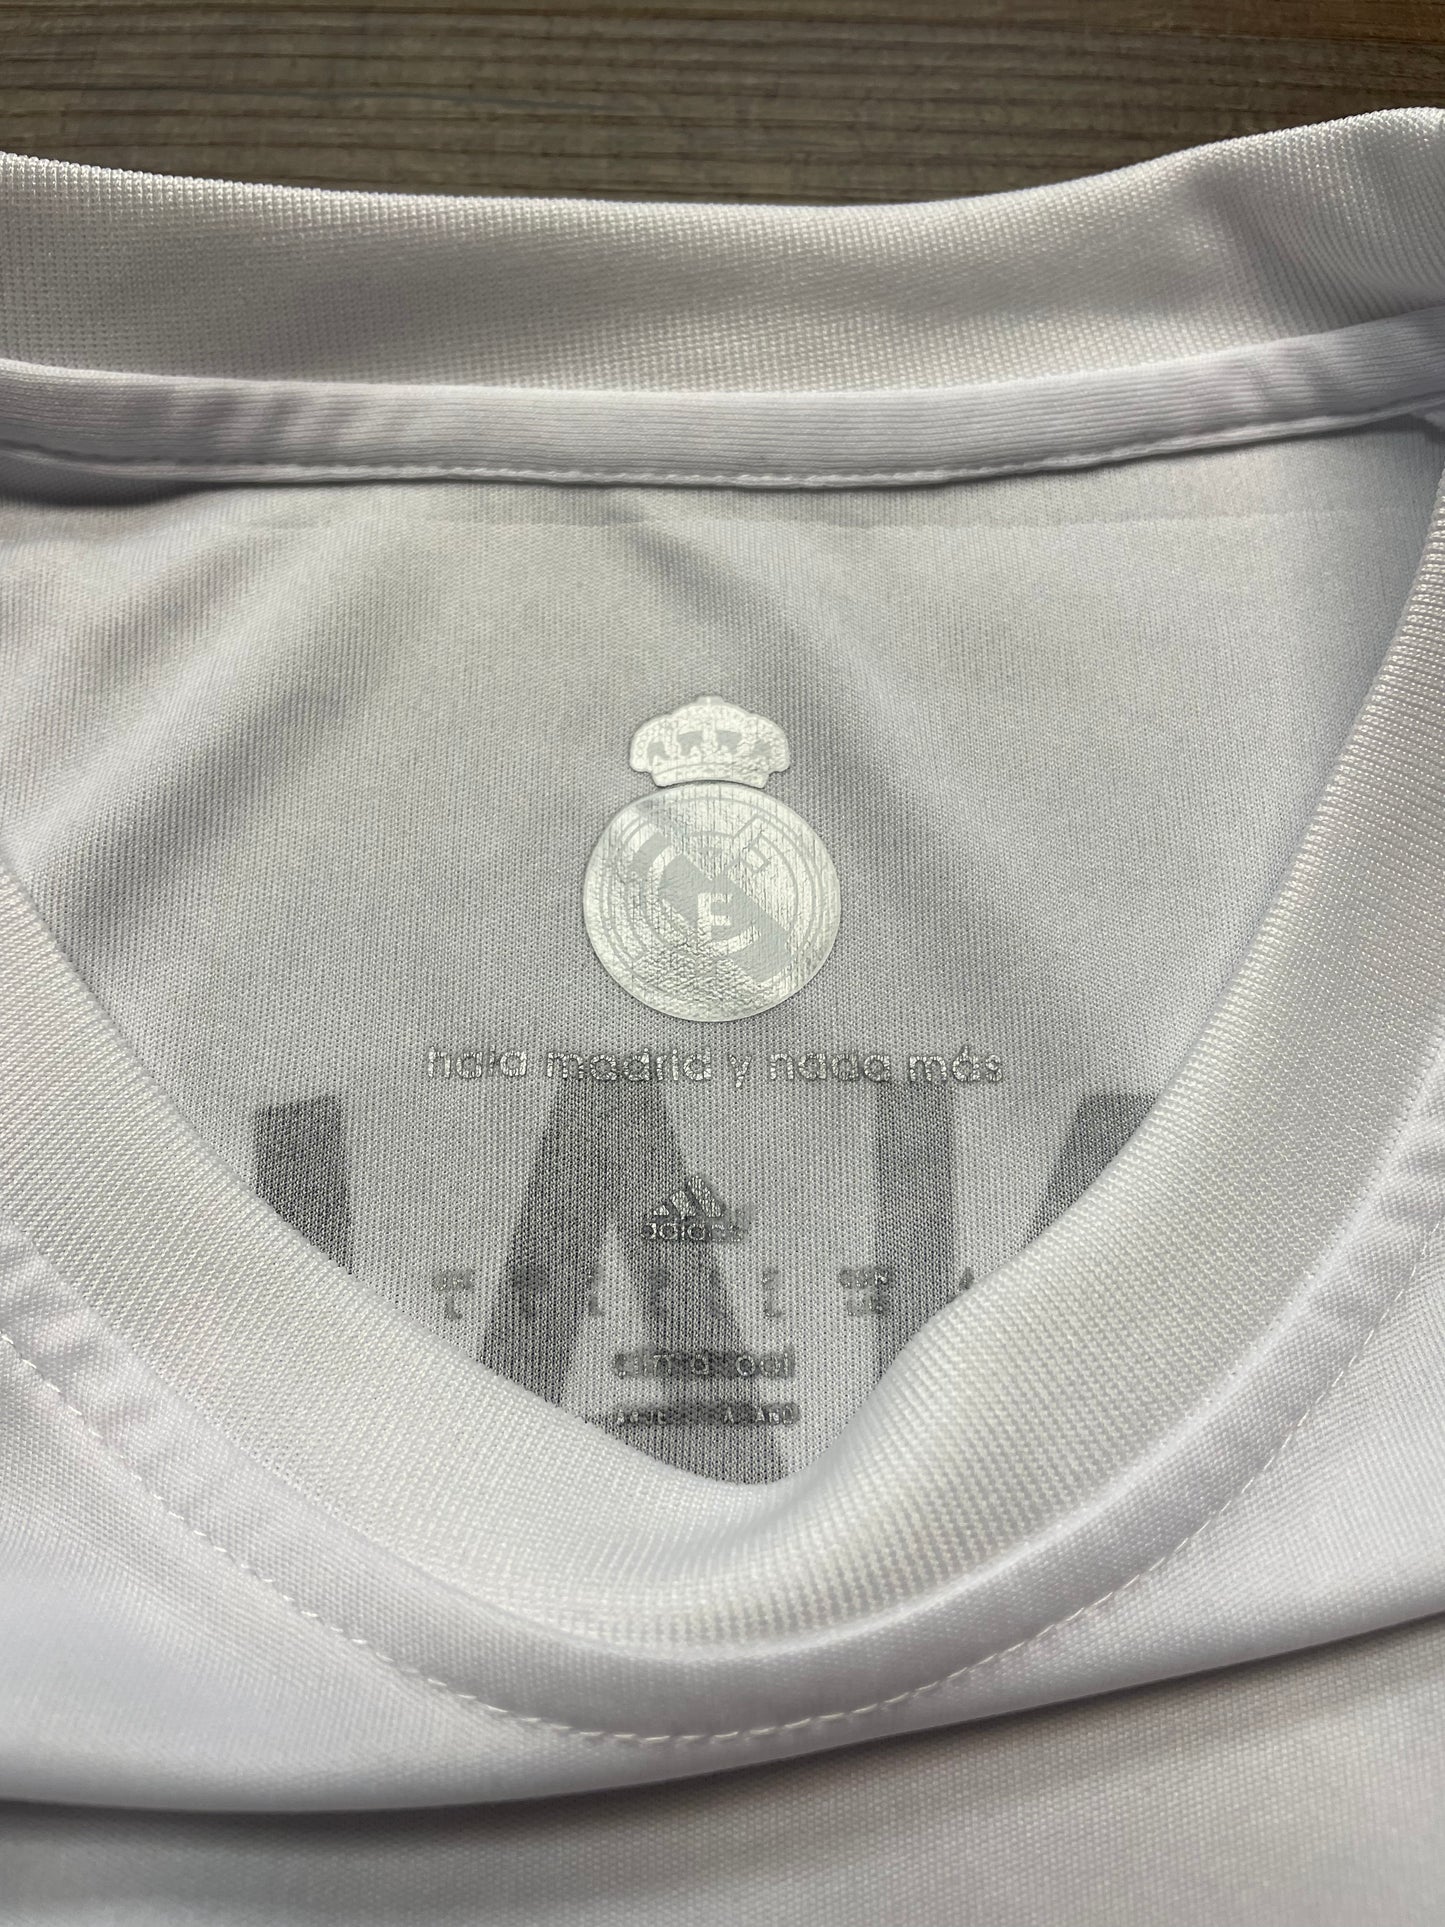 Adidas Men's Real Madrid Ronaldo #7 Soccer Jersey (L)